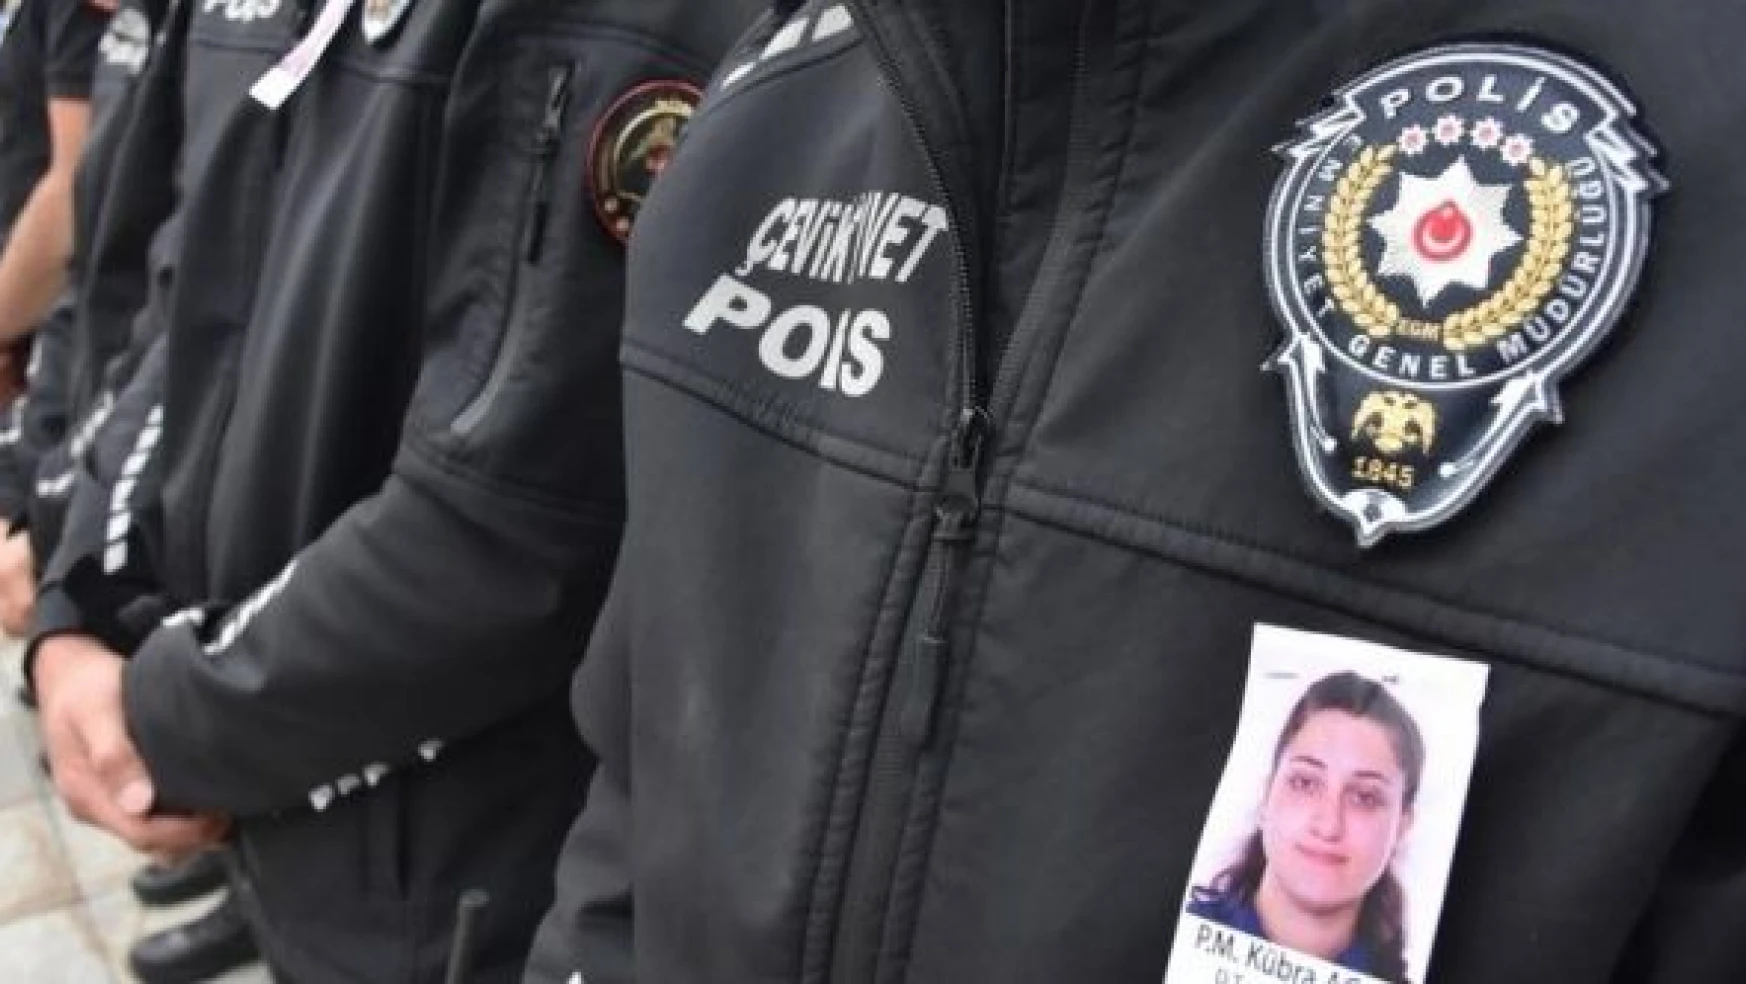 Silahla vurulan polis memuru Erzurum'da toprağa verildi